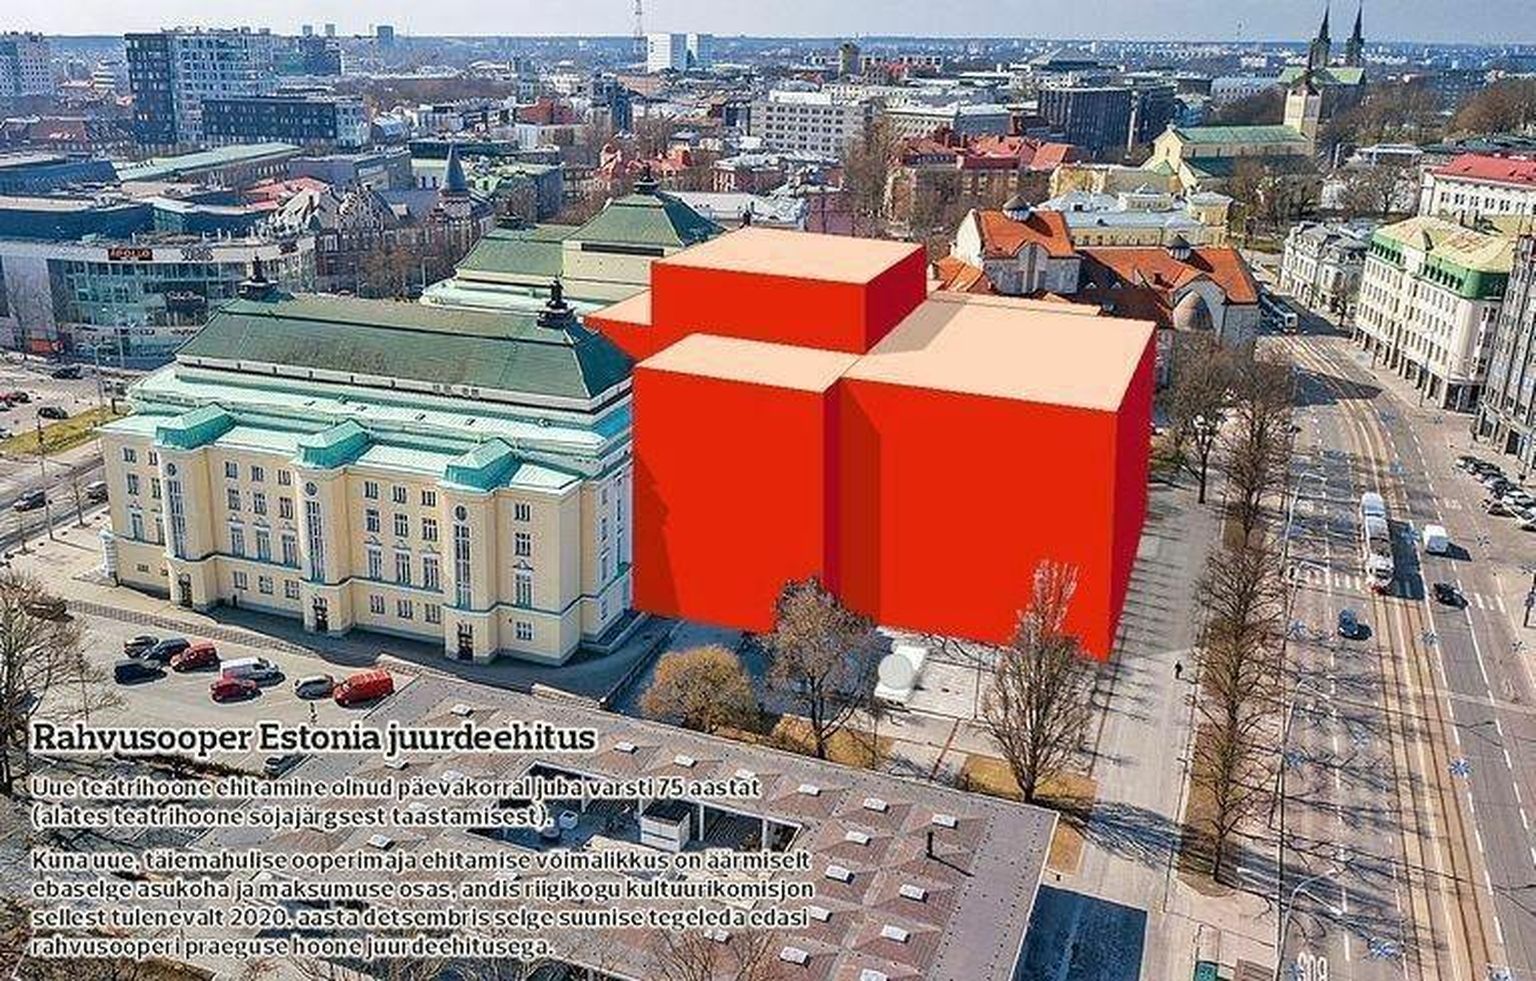 Estonia juurdeehituse eskiis andis möödunud aastal uue keelendi – punane kast.